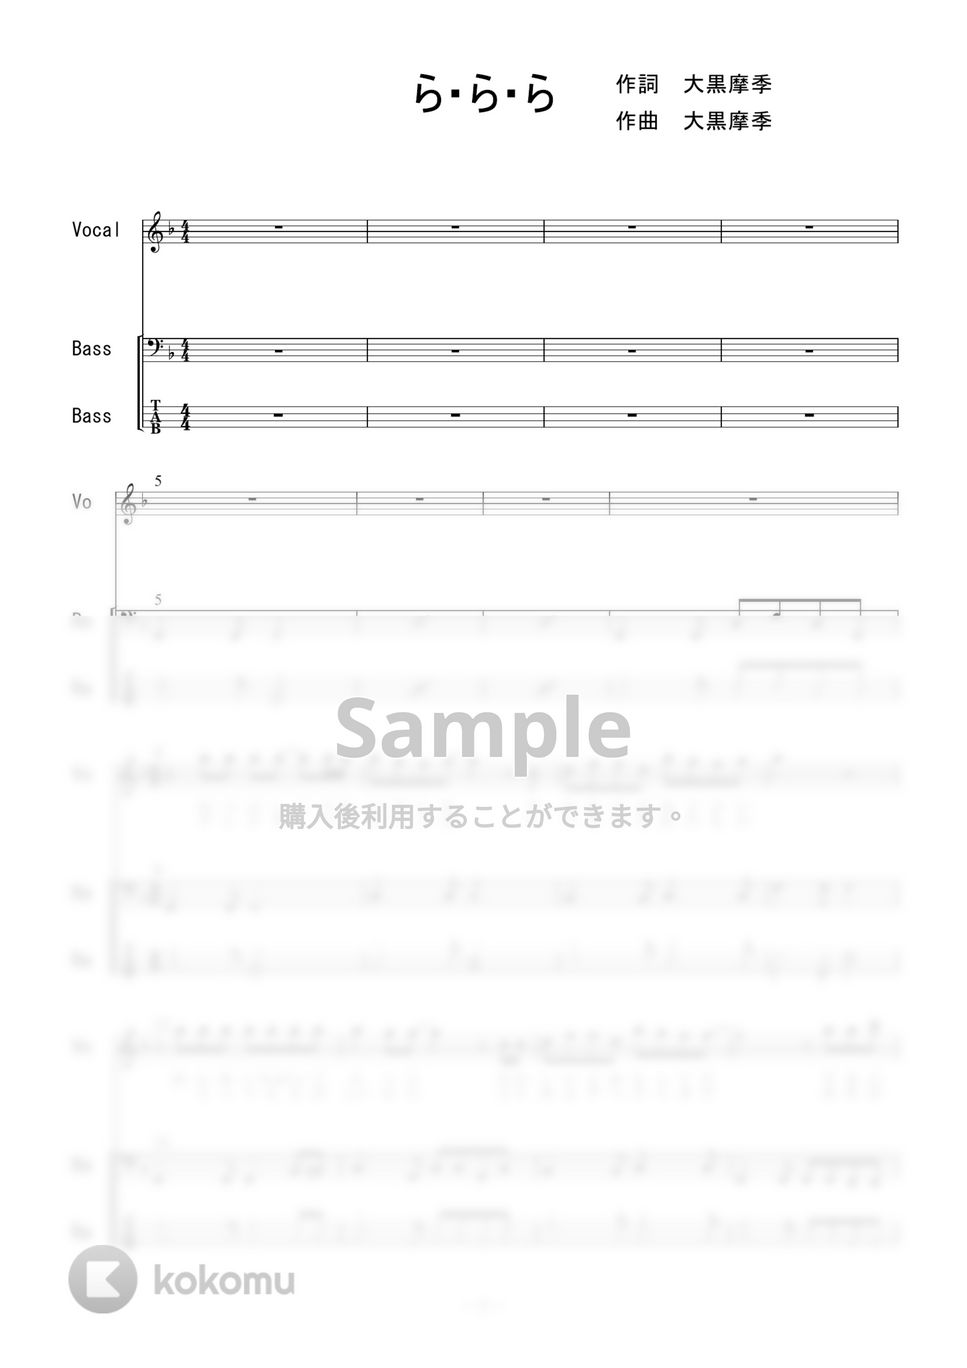 大黒摩季 - ら・ら・ら (ベース) by 二次元楽譜製作所